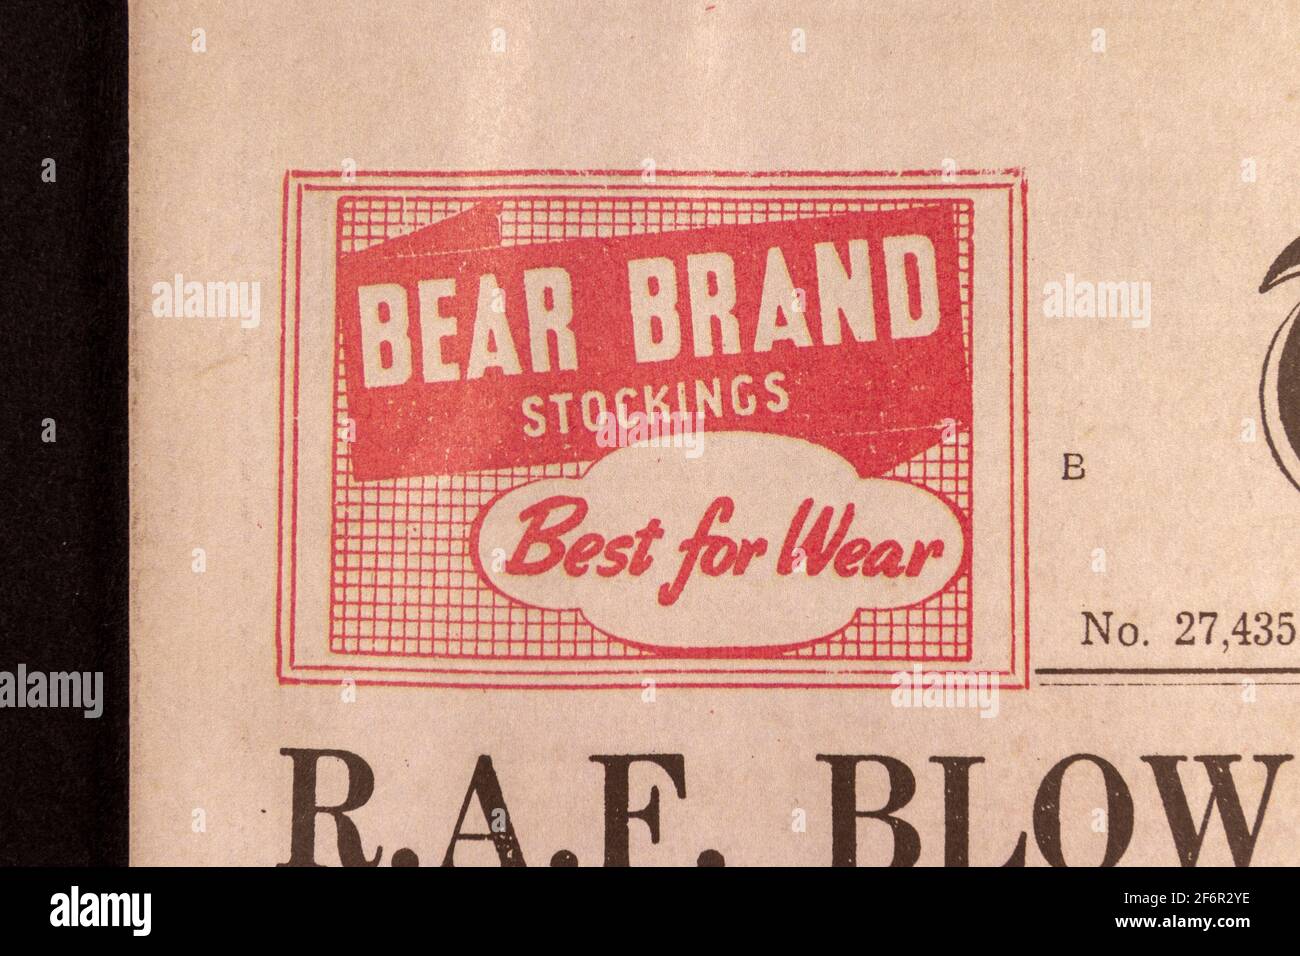 Publicité pour les bas de marque Bear n The Daily Telegraph (réplique), 18 mai 1943, le lendemain du raid de Dam Busters. Banque D'Images